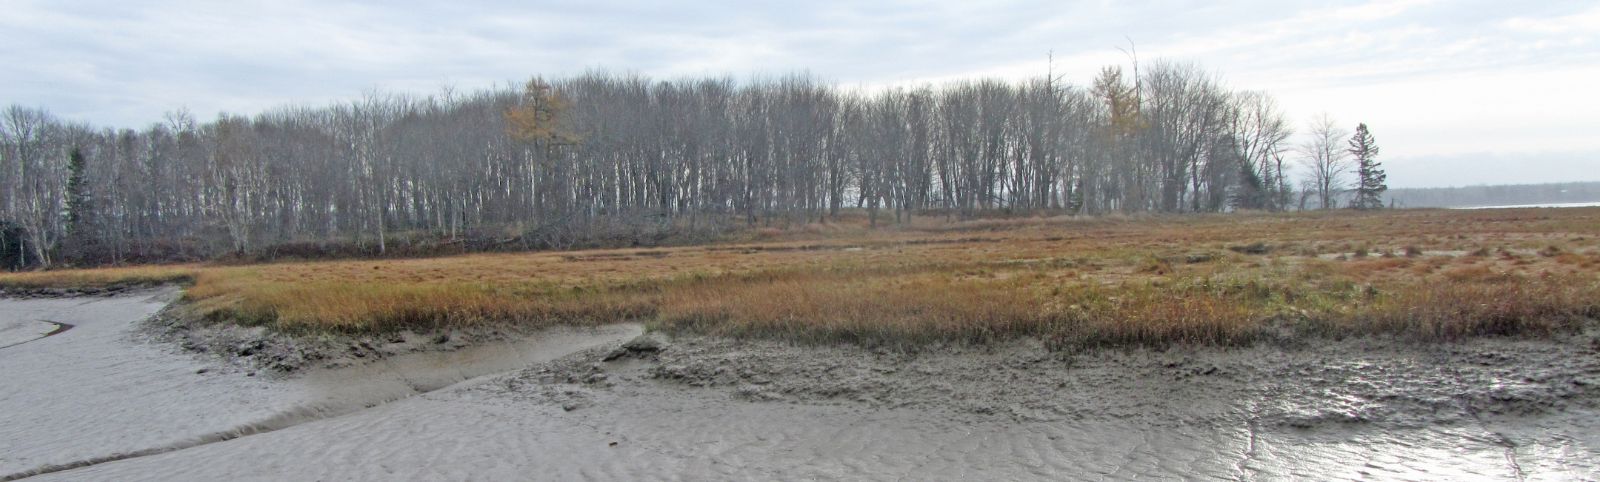 Marsh Island in autumn